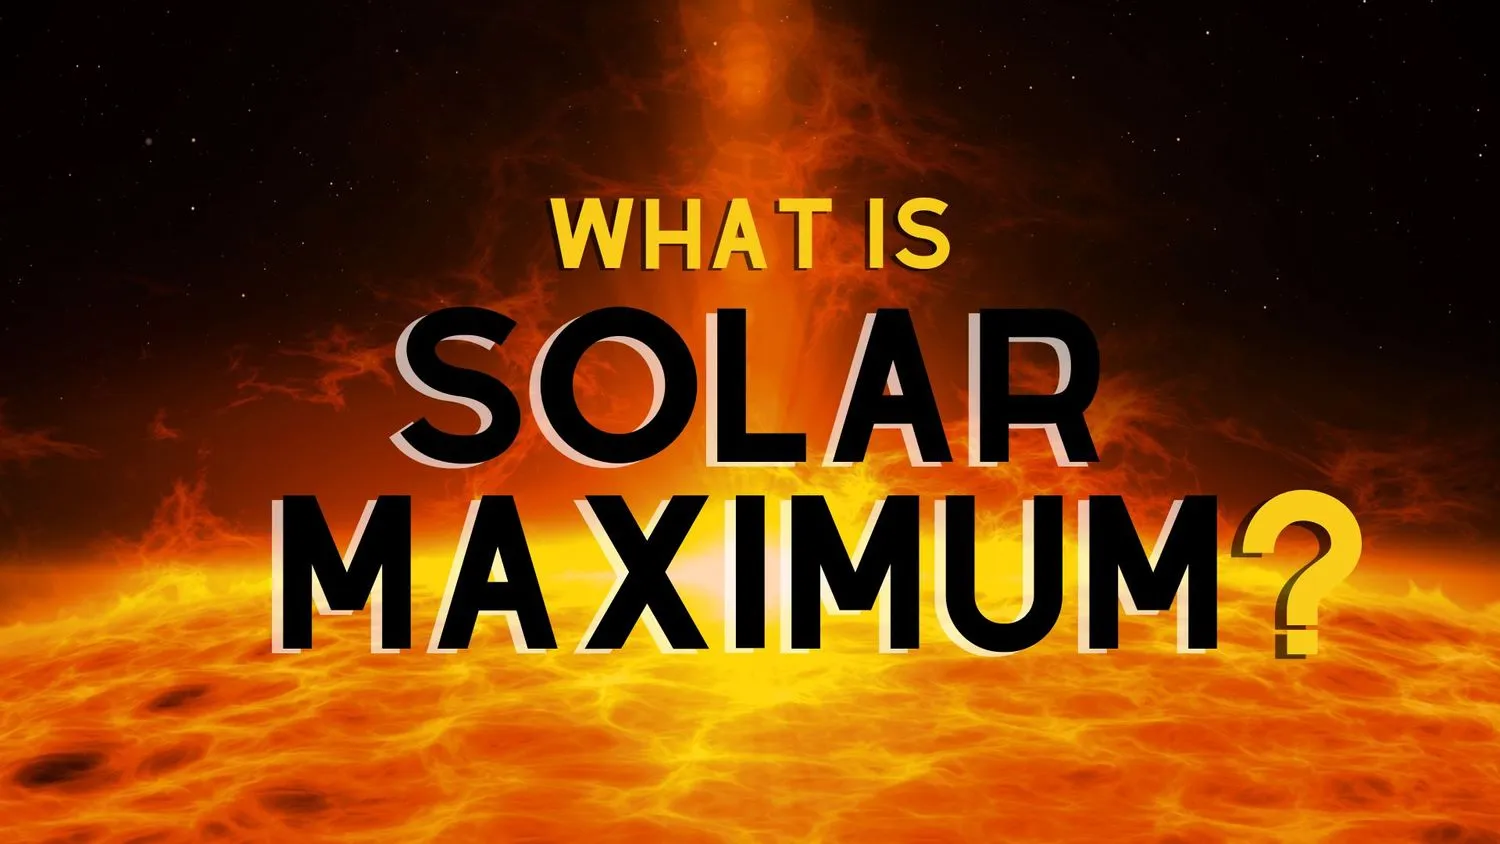 Mehr über den Artikel erfahren Das solare Maximum – Was ist es und wann wird es auftreten?